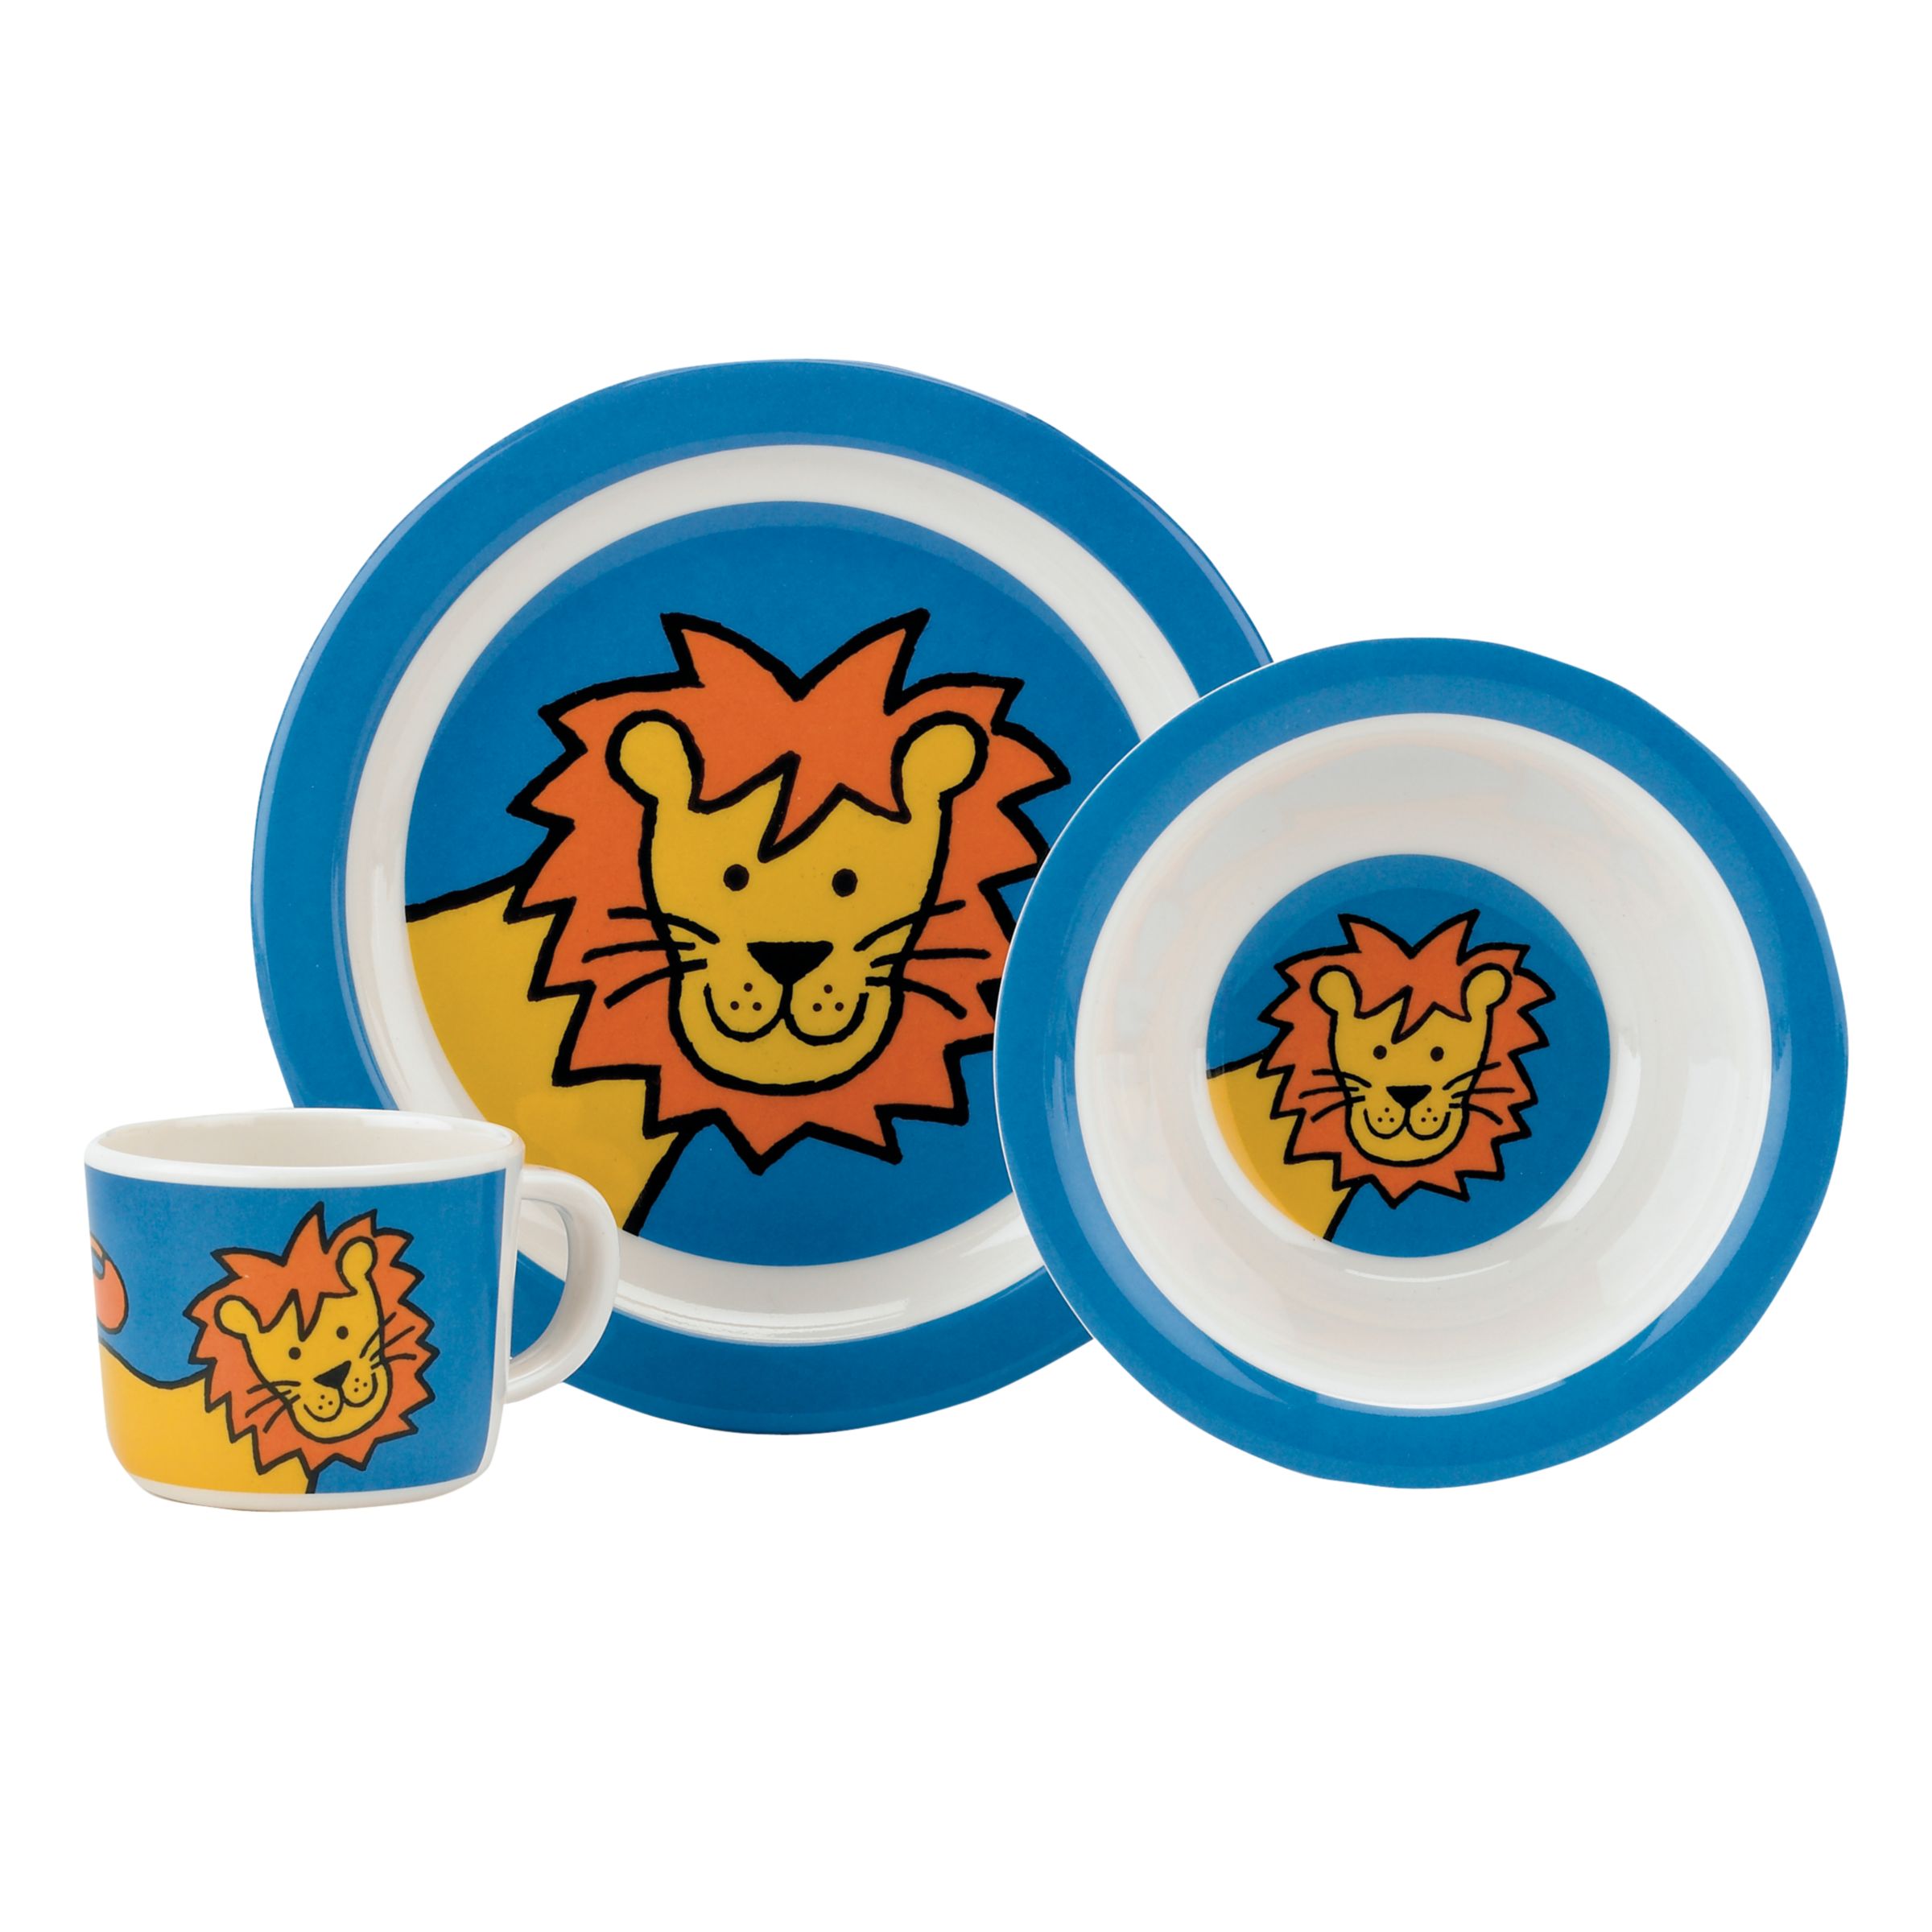 Jellycat Lion Melamine Dinner Set, Blue